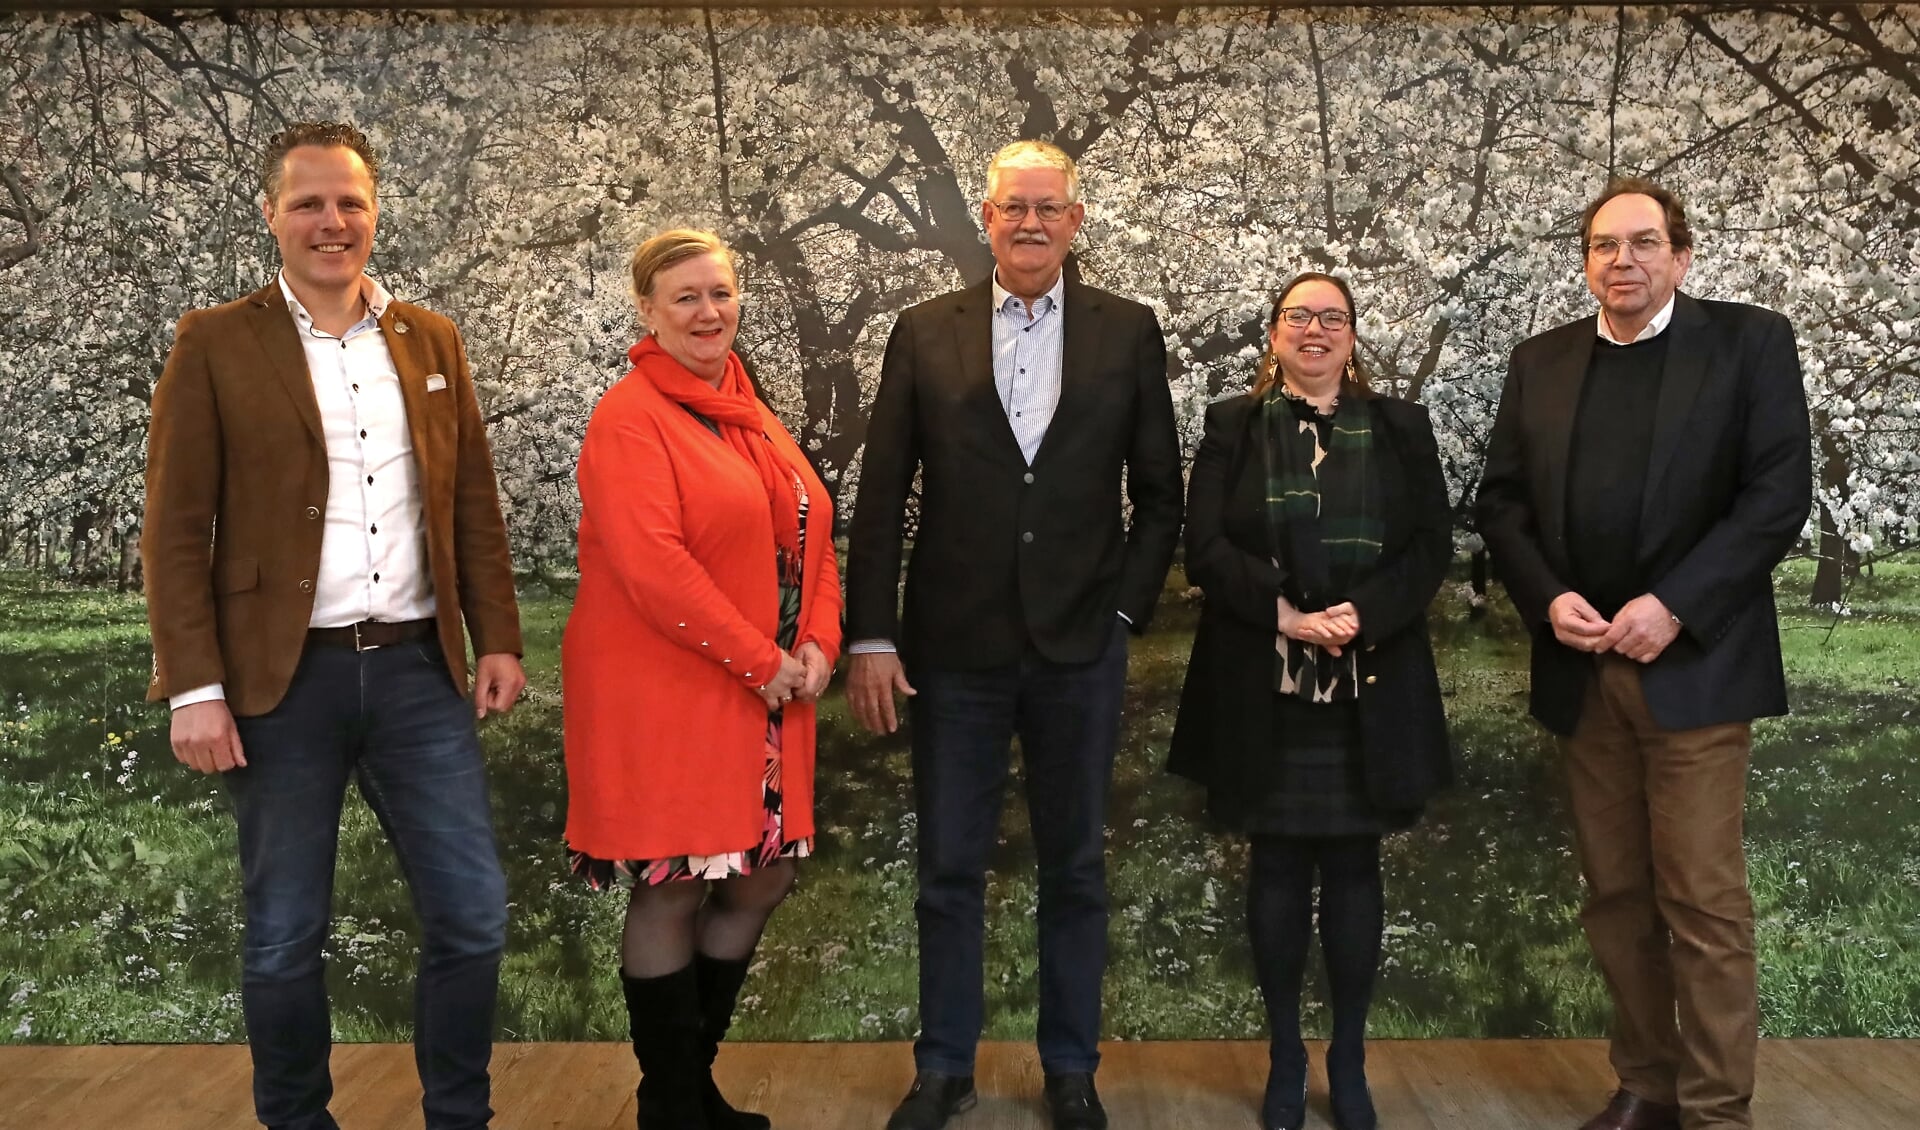 De nieuwe wethouders van West Betuwe. Van links naar rechts: Rutger van Stappershoef (DB), Joke van Vrouwwerff (VWB), Govert van Bezooijen (CU), Jacoline Hartman (DB) en Jan de Geus (D66).